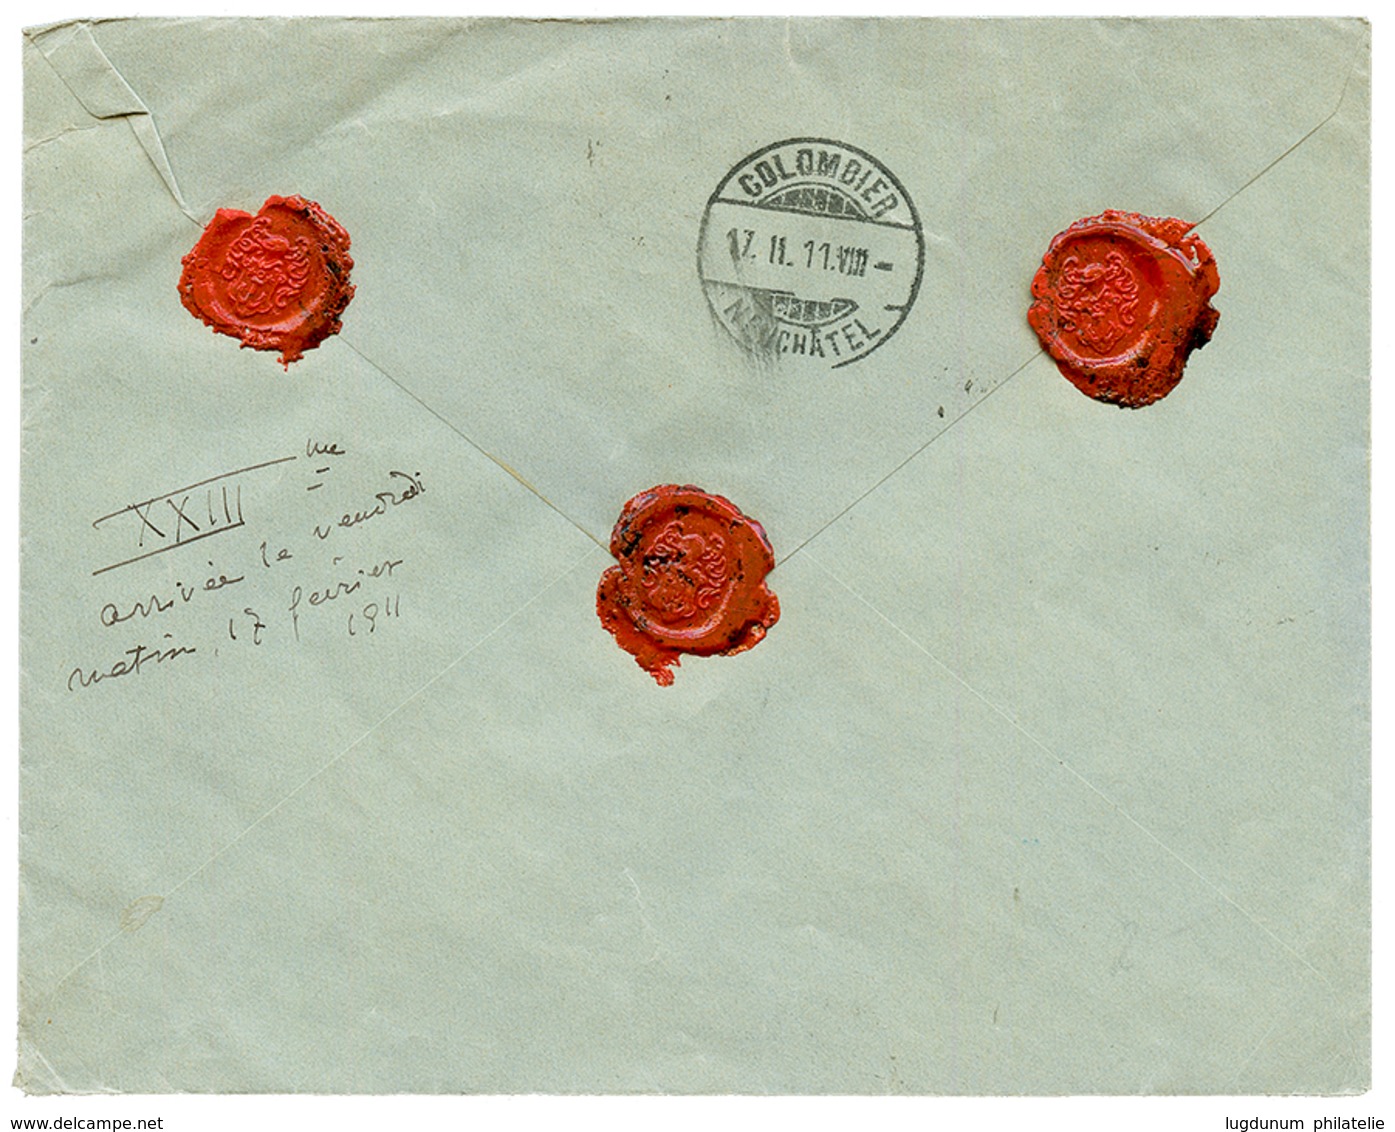 1911 4g Canc. ADDIS-ABABA POSTES (french Type) On REGISTERED Envelope To SWITZERLAND. Scarce. Vvf. - Ethiopie